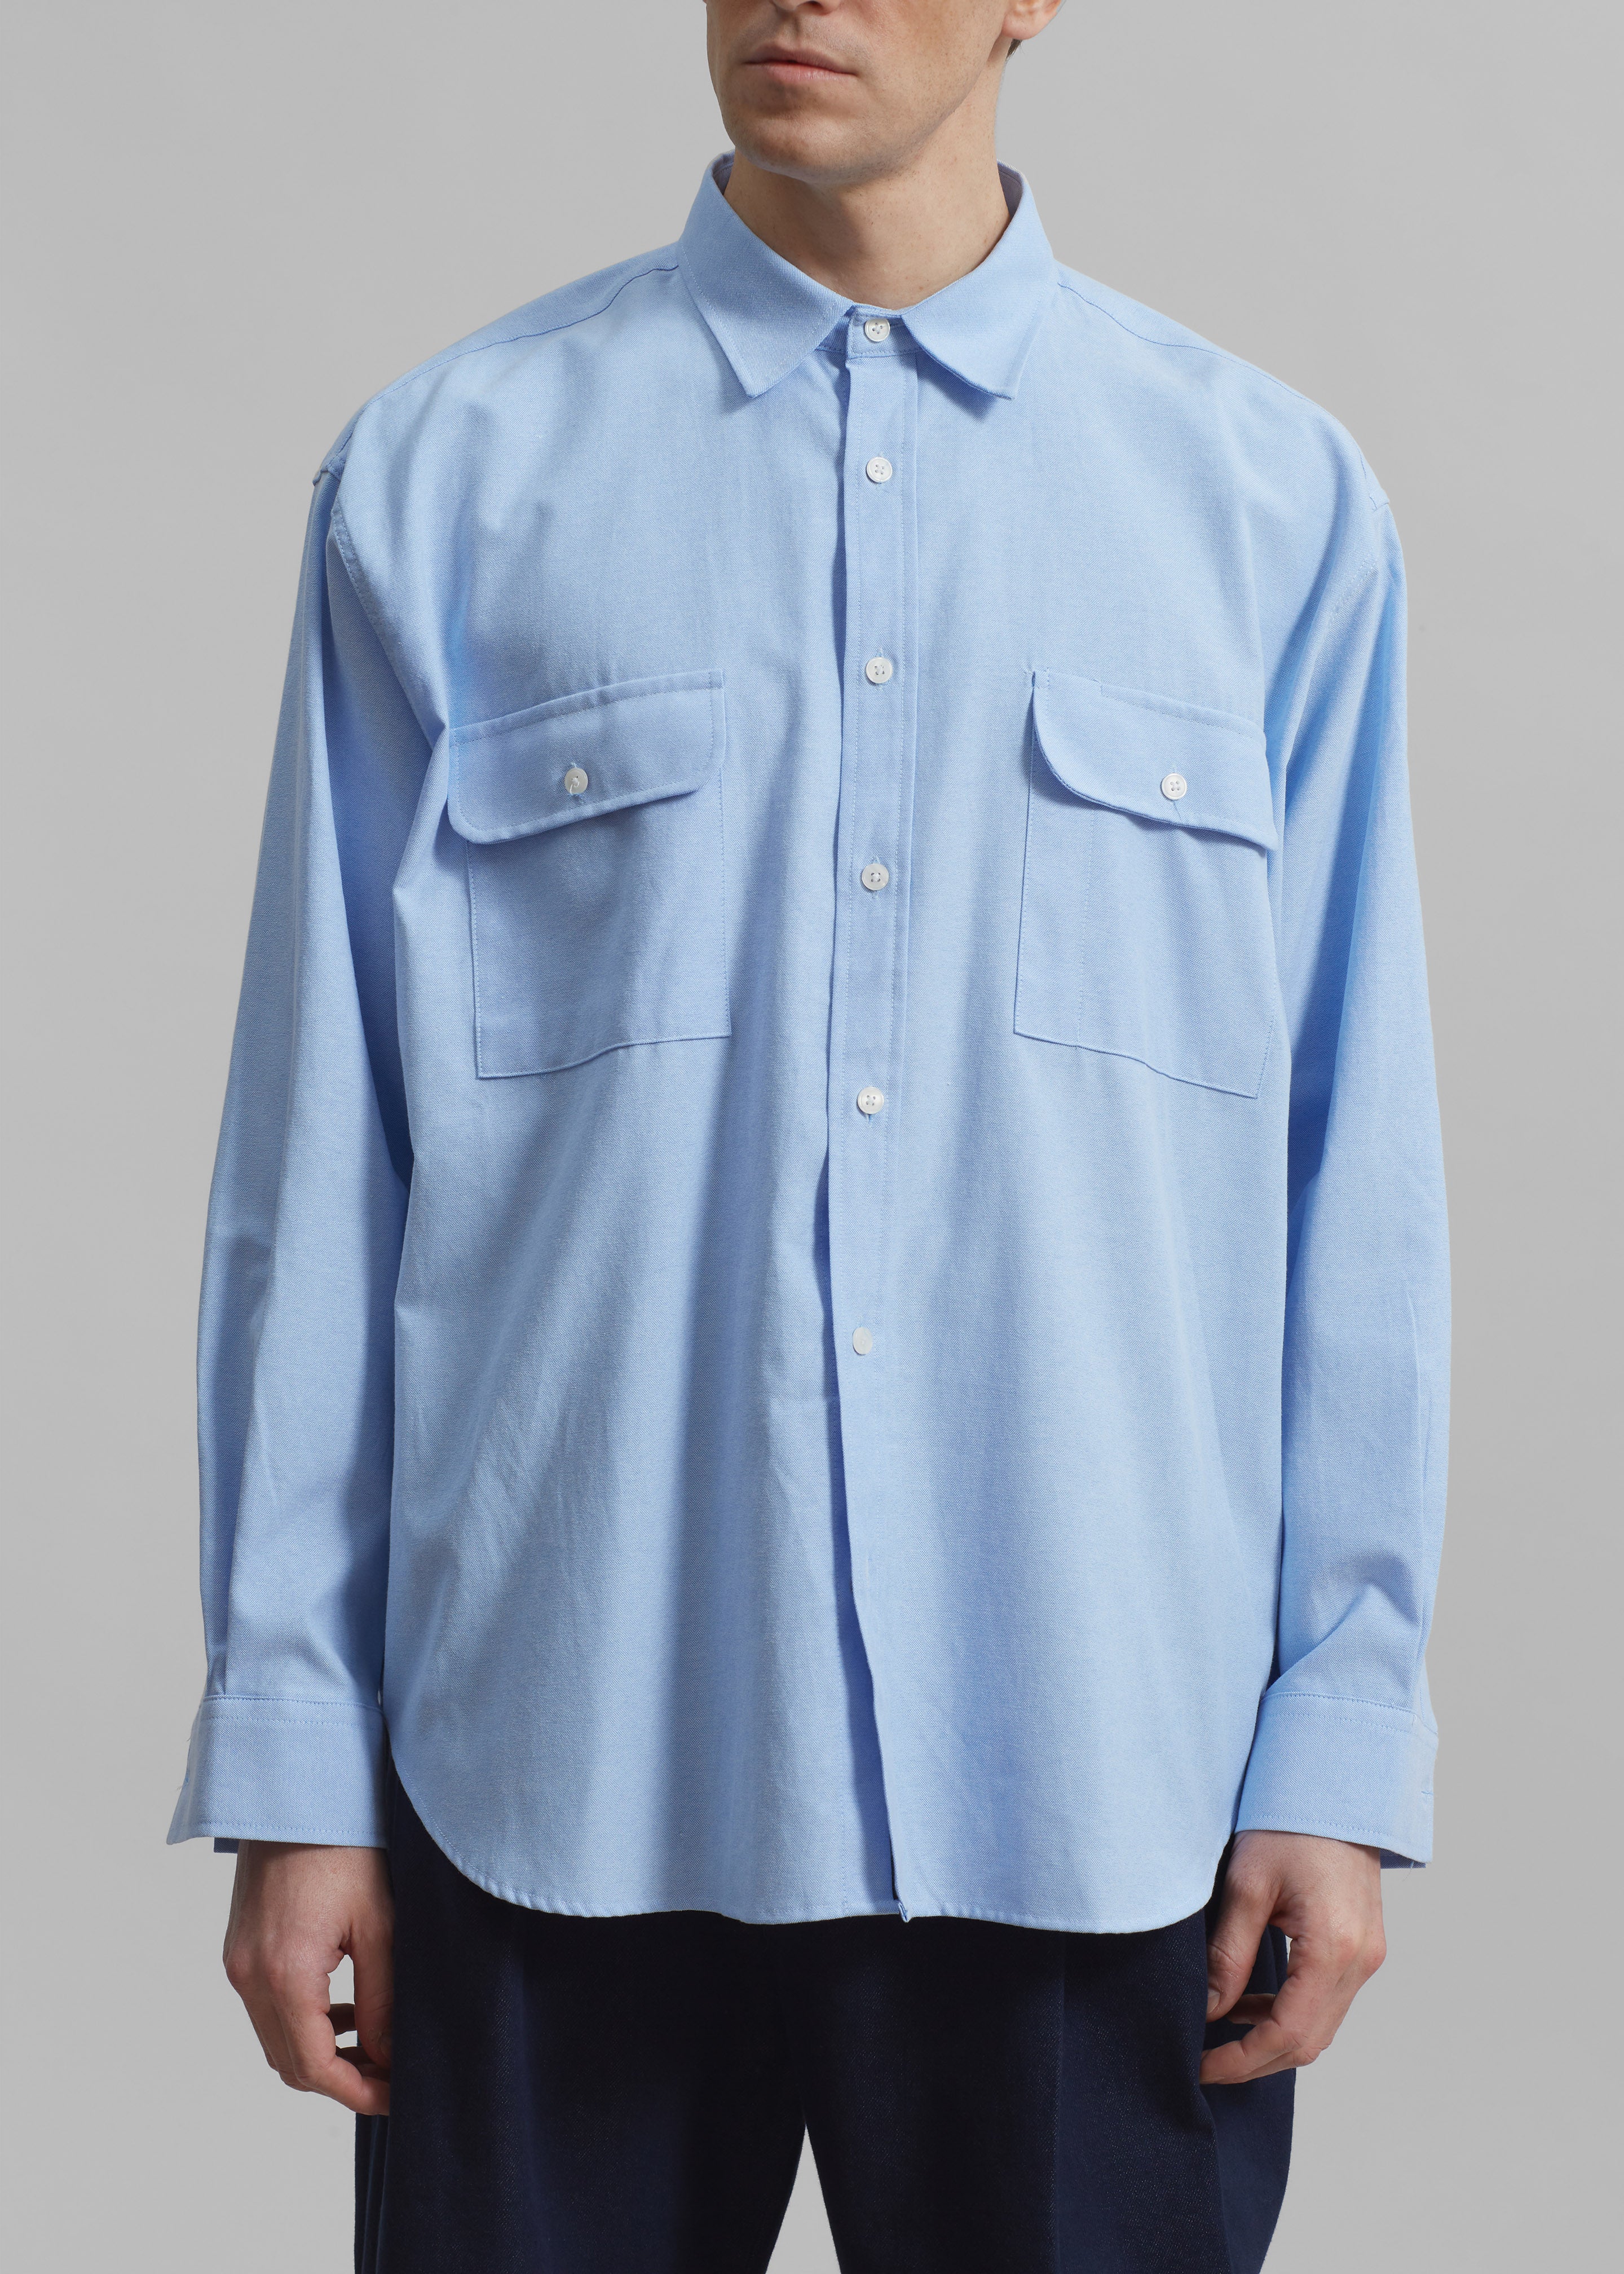 Alexander Button Up Shirt - Blue - 3